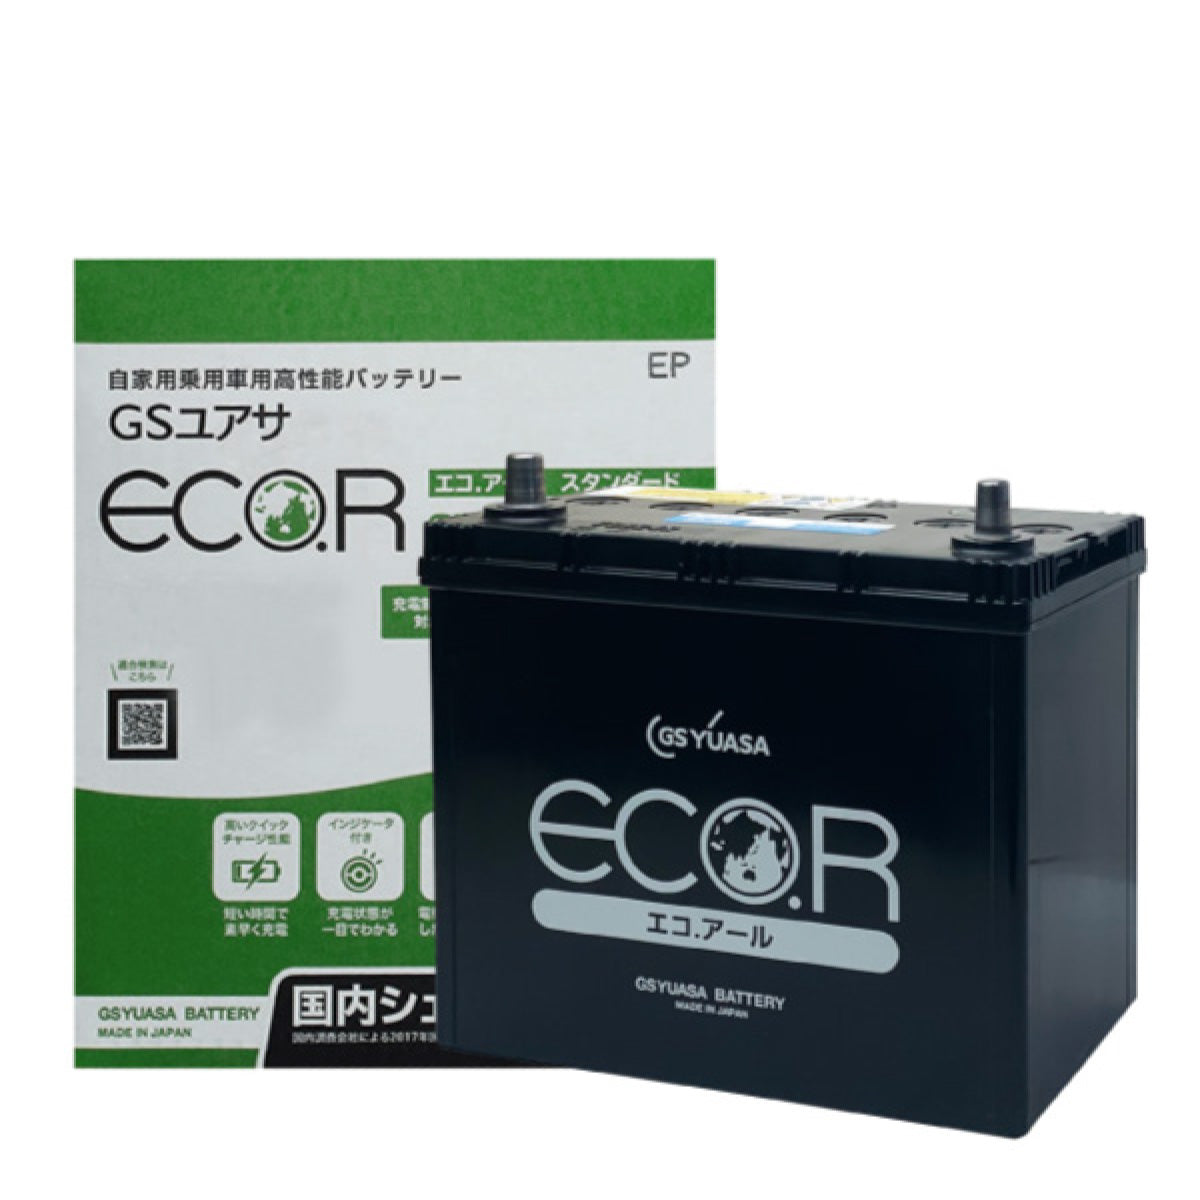 EC 70B24L GSユアサ バッテリー エコアール ハイクラス 充電制御車に最適 EC-70B24L - オイル、バッテリーメンテナンス用品